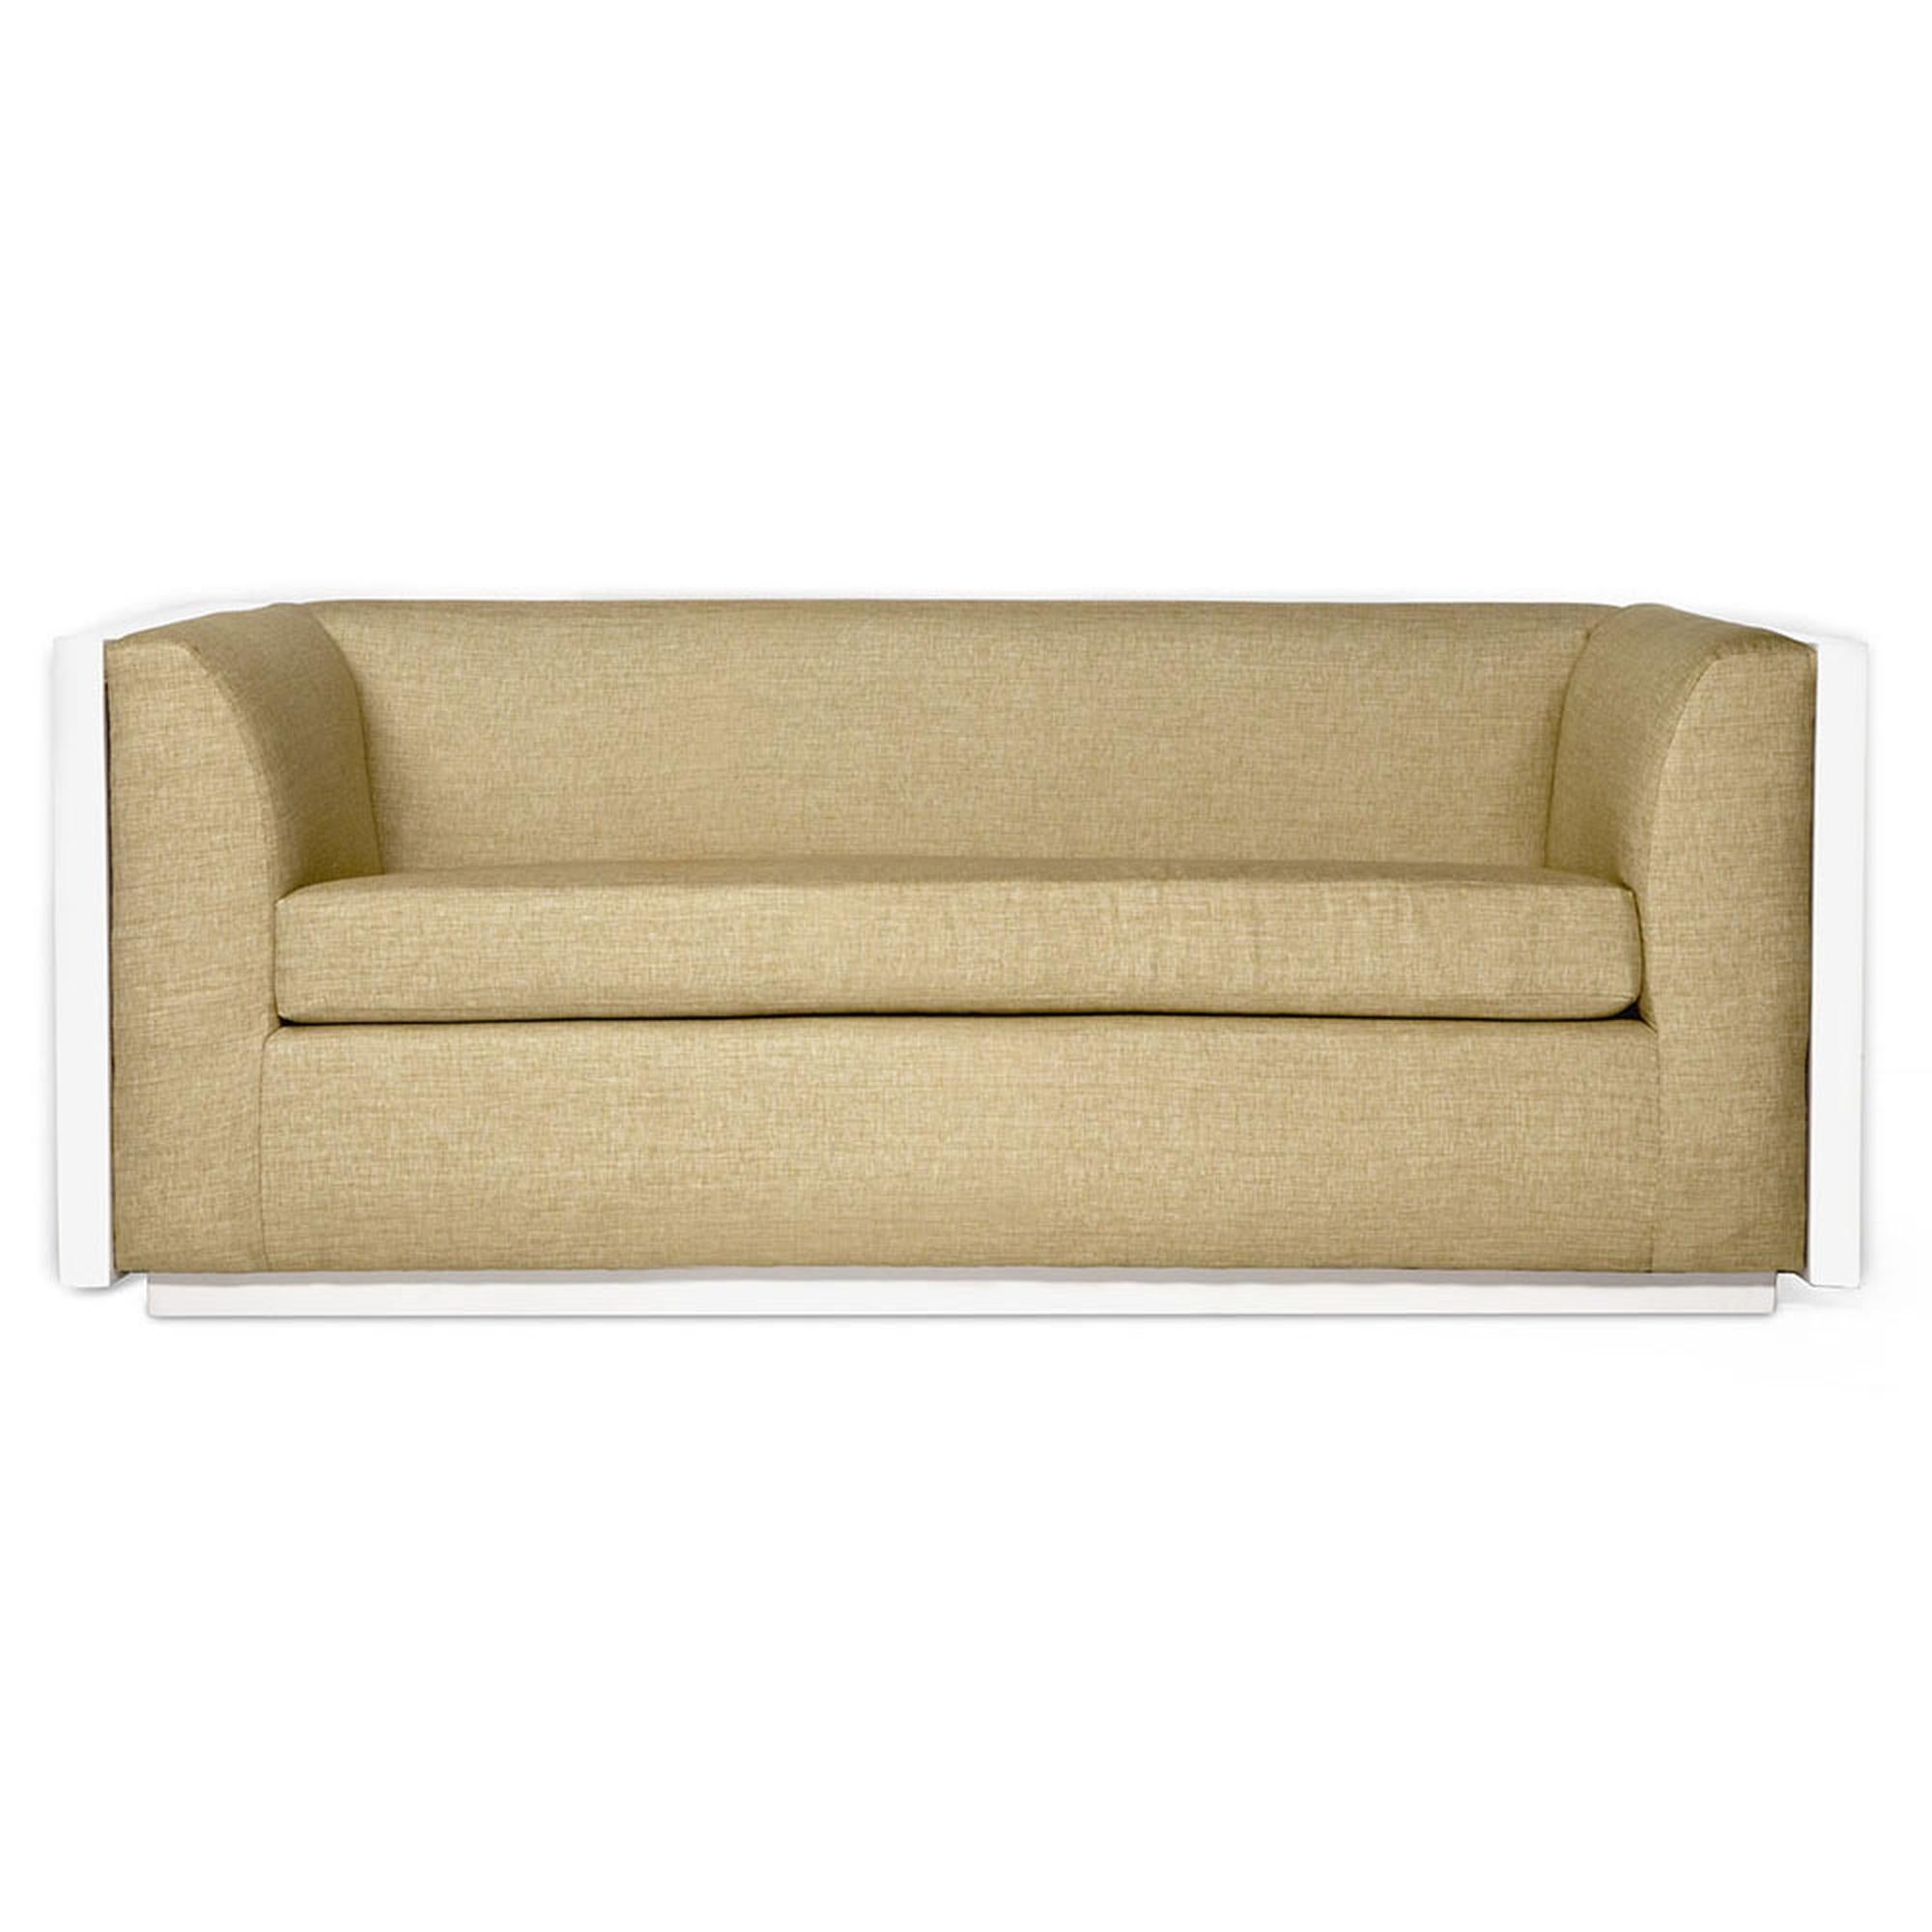 Das Monterey-Sofa ist luxuriös, modern und schick. Mit der Kombination aus Leichtigkeit und Stil ist dieses Sofa mit achtfach handgebundenen Federn und einem mit Daunen umwickelten Schaumstoffsitz konstruiert, um Haltbarkeit, Unterstützung und